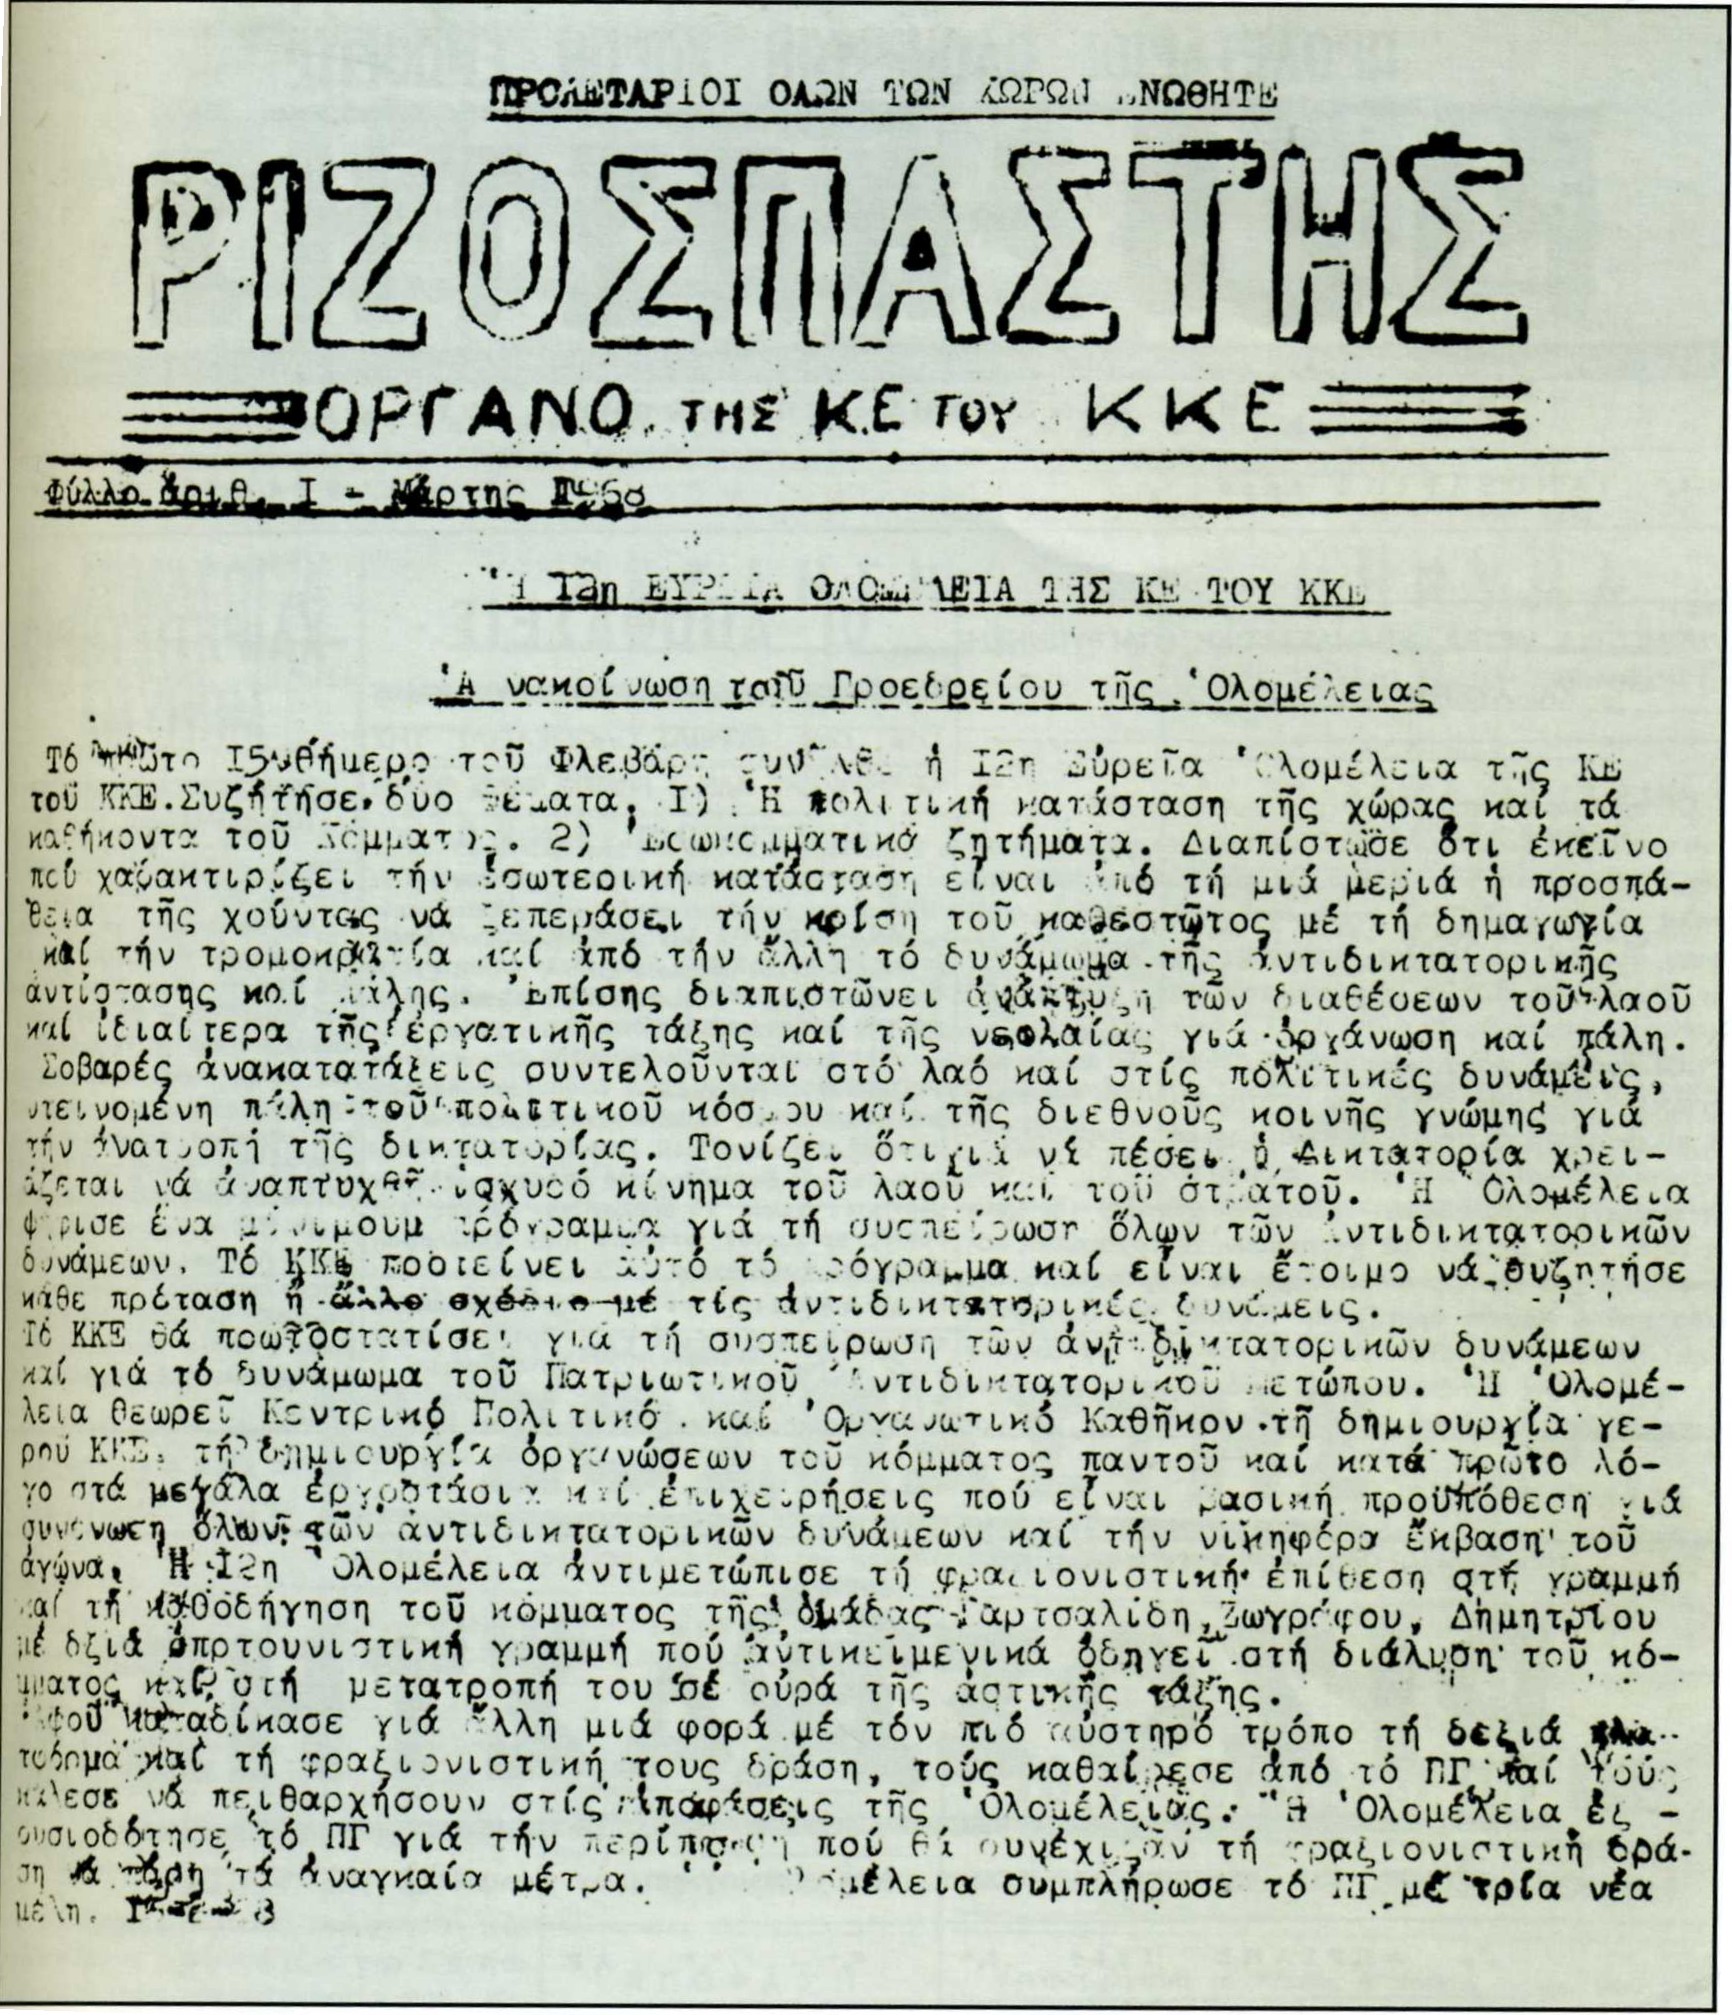 Το πρώτο φύλλο του παράνομου «Ριζοσπάστη» την 1η Μάρτη του 1968, με την ανακοίνωση του Προεδρείου της 12ης Ολομέλειας.